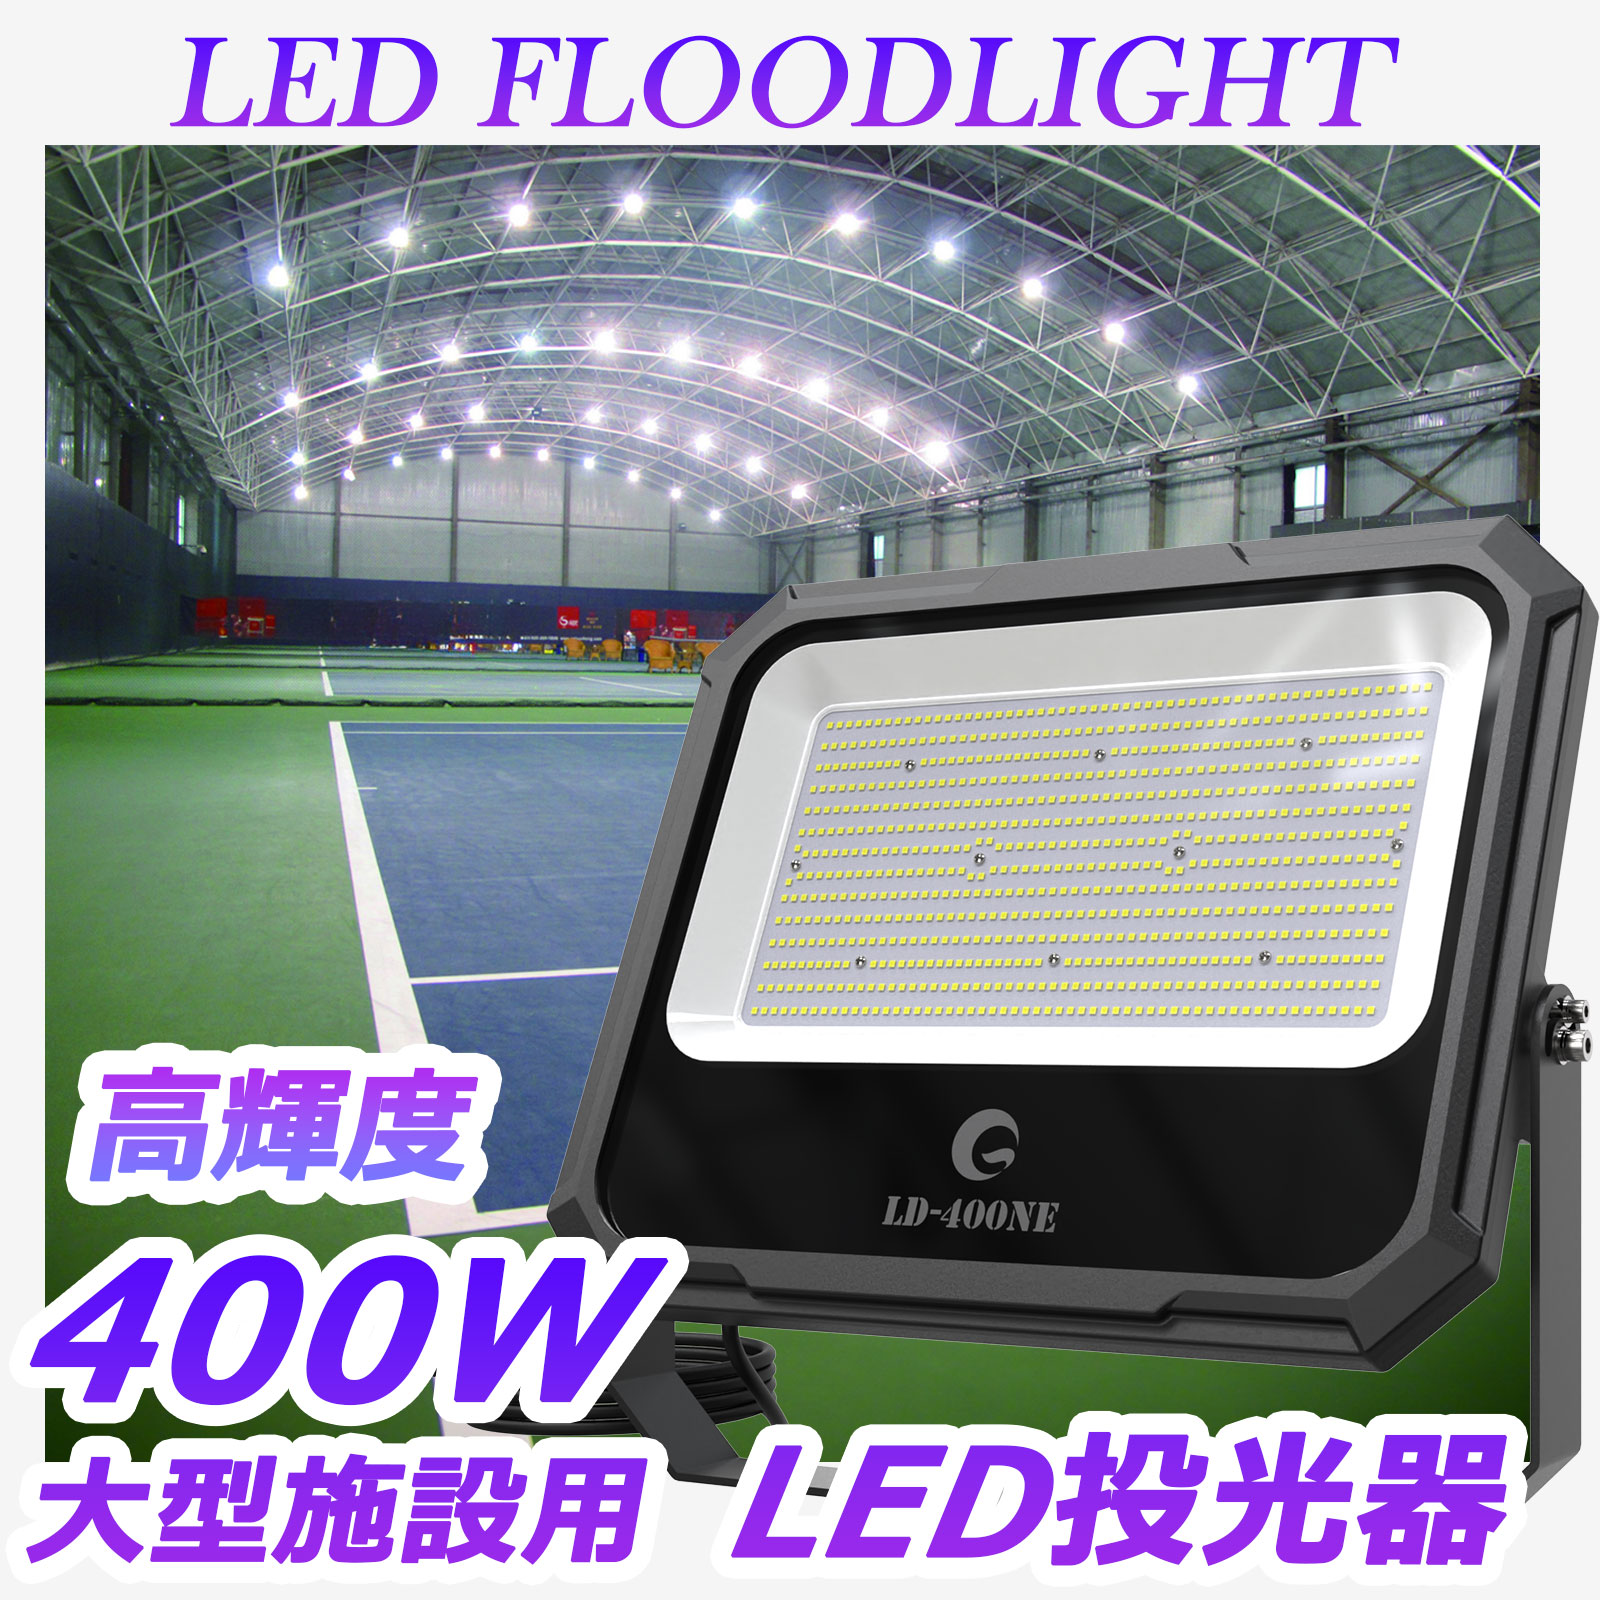 グッドグッズ(GOODGOODS) LED 投光器 400W 42000LM 屋外 IP66 防水 超薄型 大型 作業灯 LD-400NE